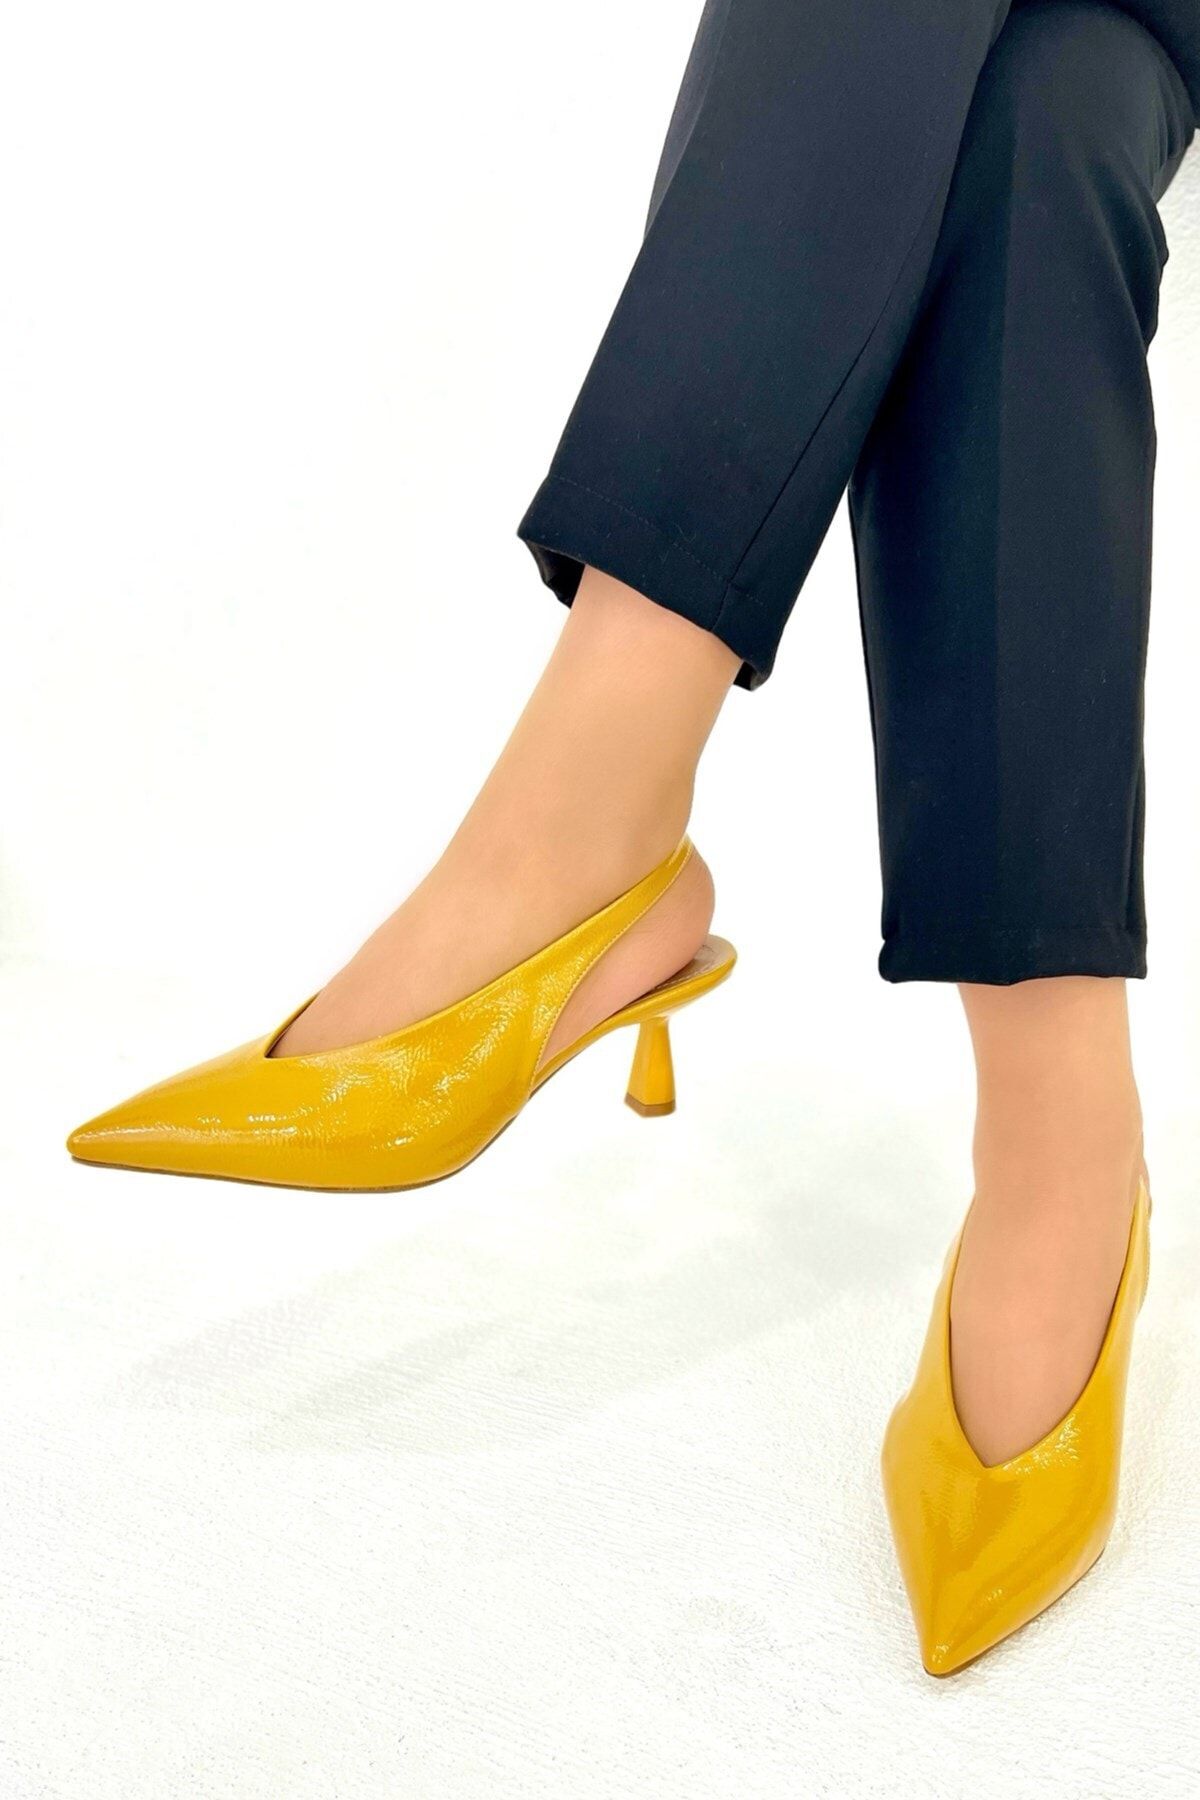 LAMİNTA Mondre Hardal Deri Kırışık Rugan Kadın Topuklu Ayakkabı